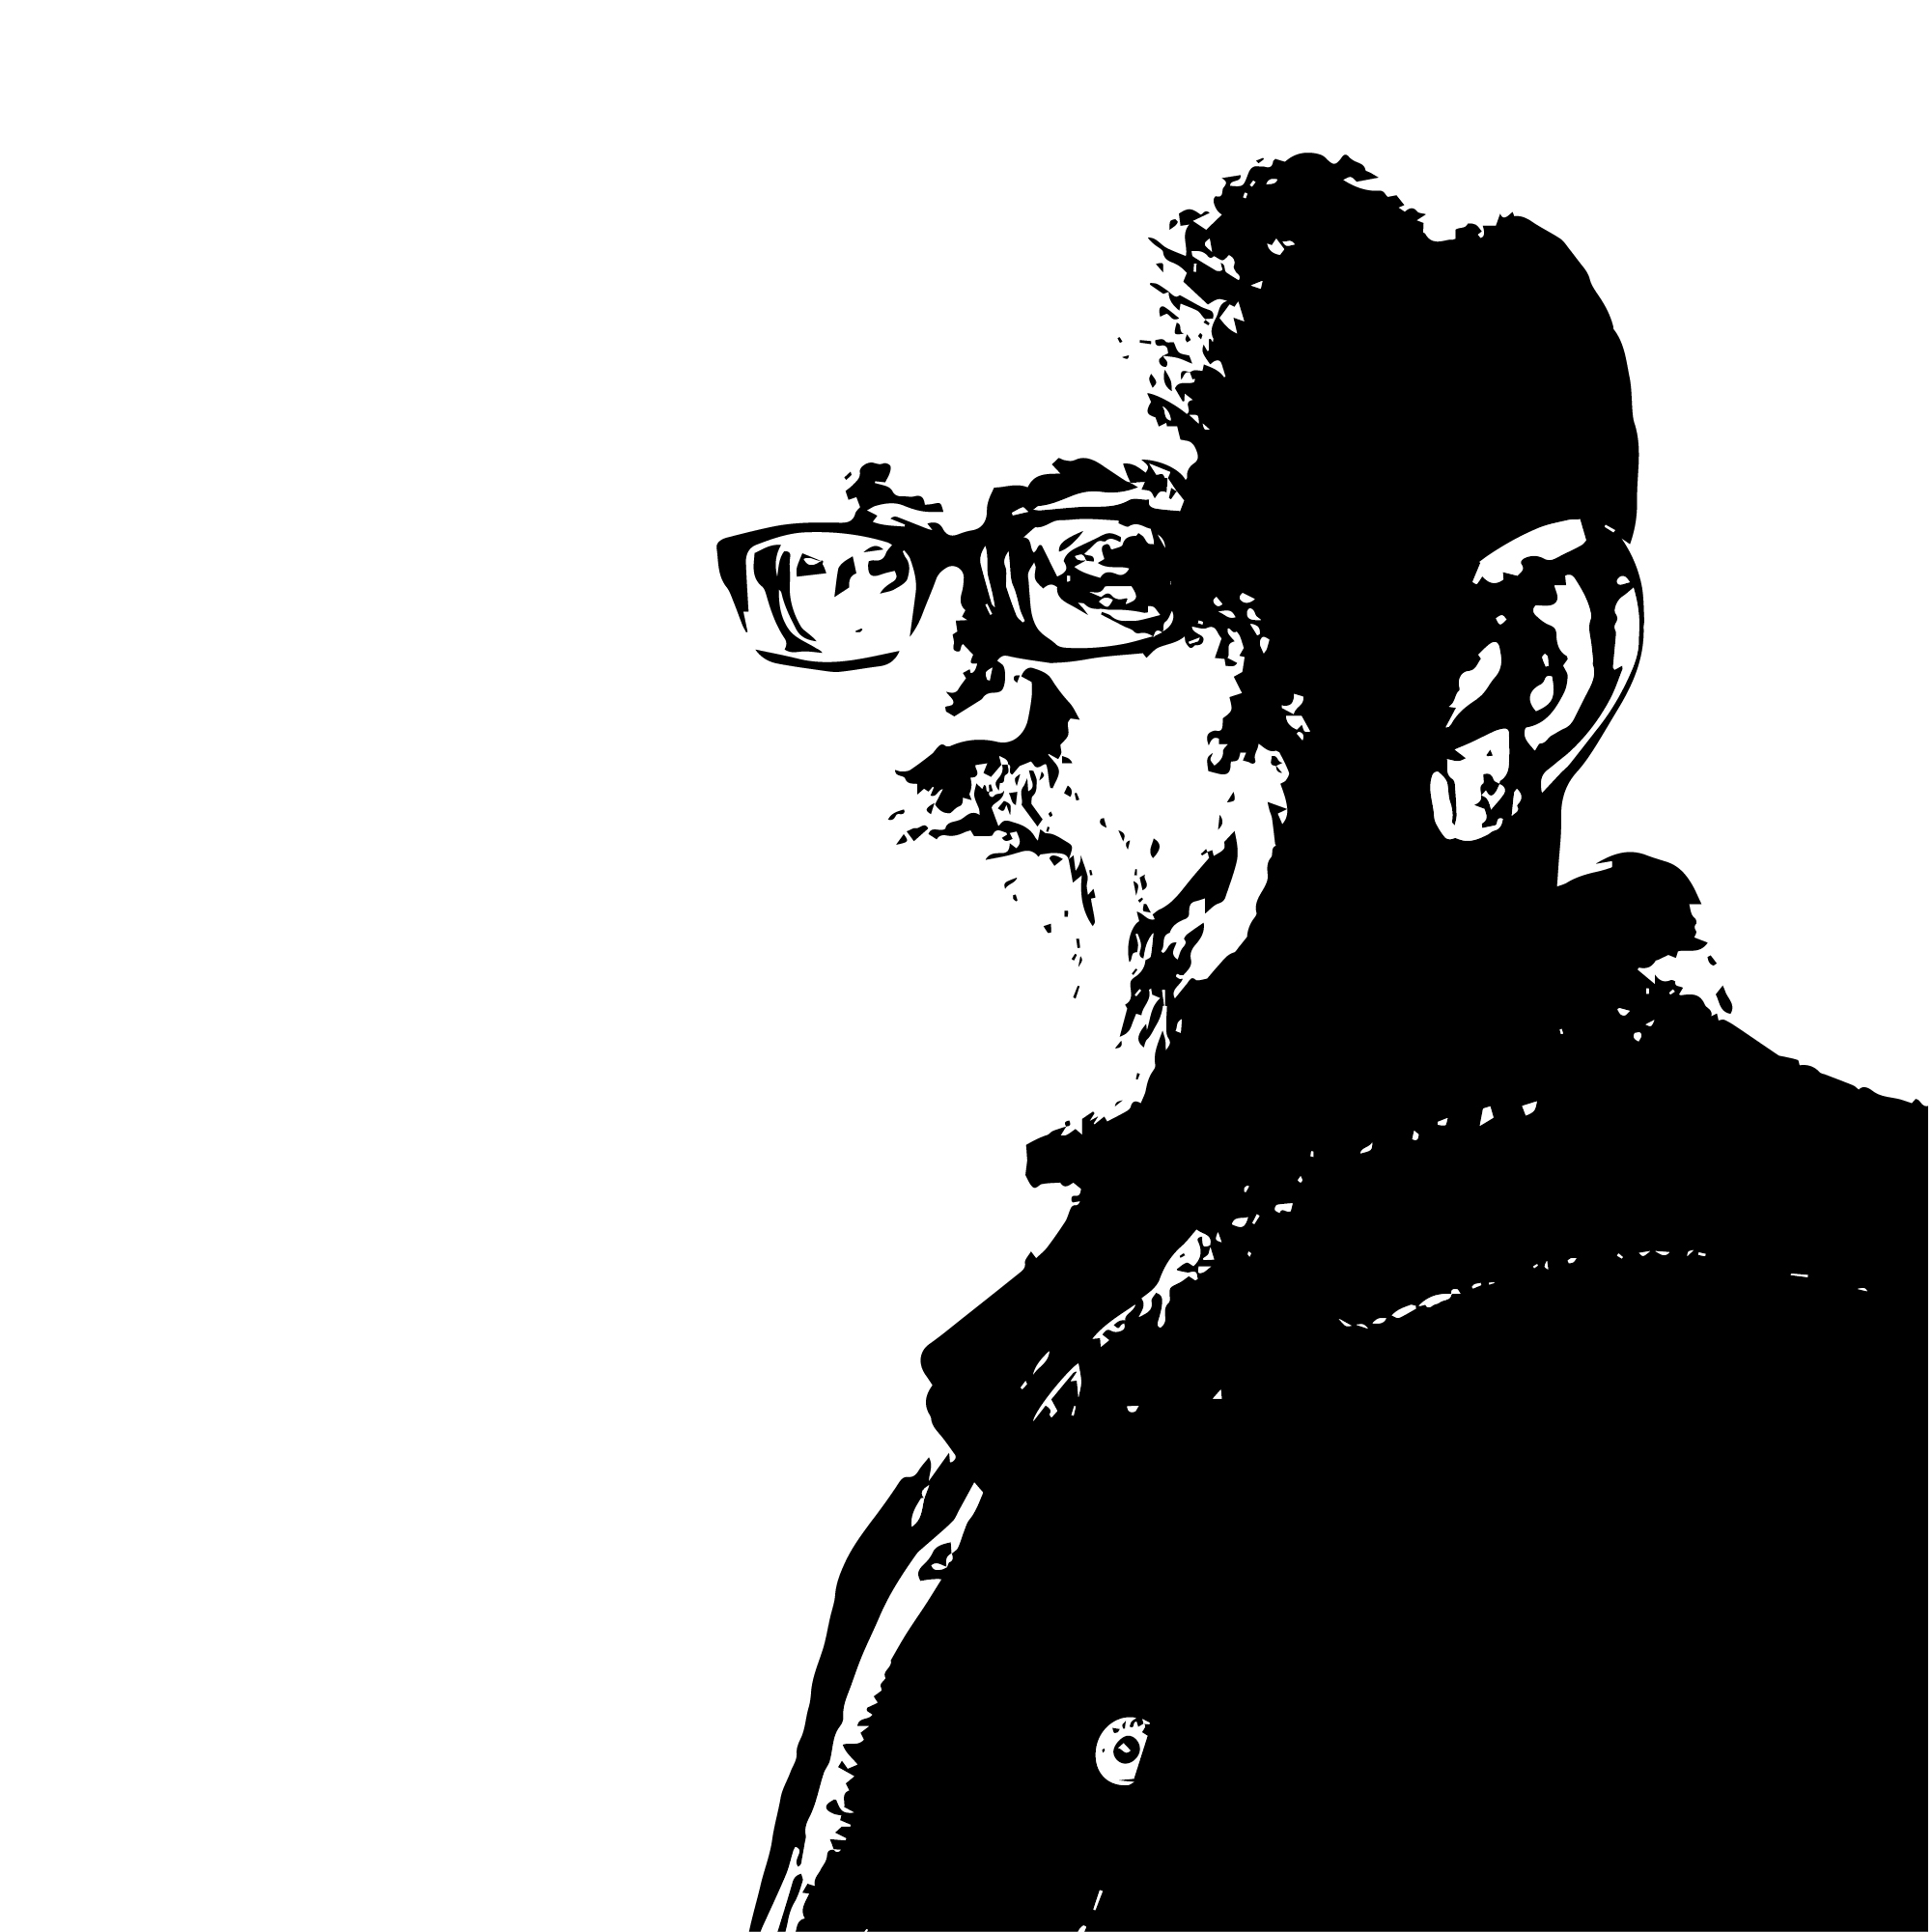 czarno-biały stylizowany portret łotewskiego i już nieżyjącego autora Leons Briedis. Mężczyzna w starszym wieku, z siwymi włosami, broda i okularami, w ciemnym ubraniu.